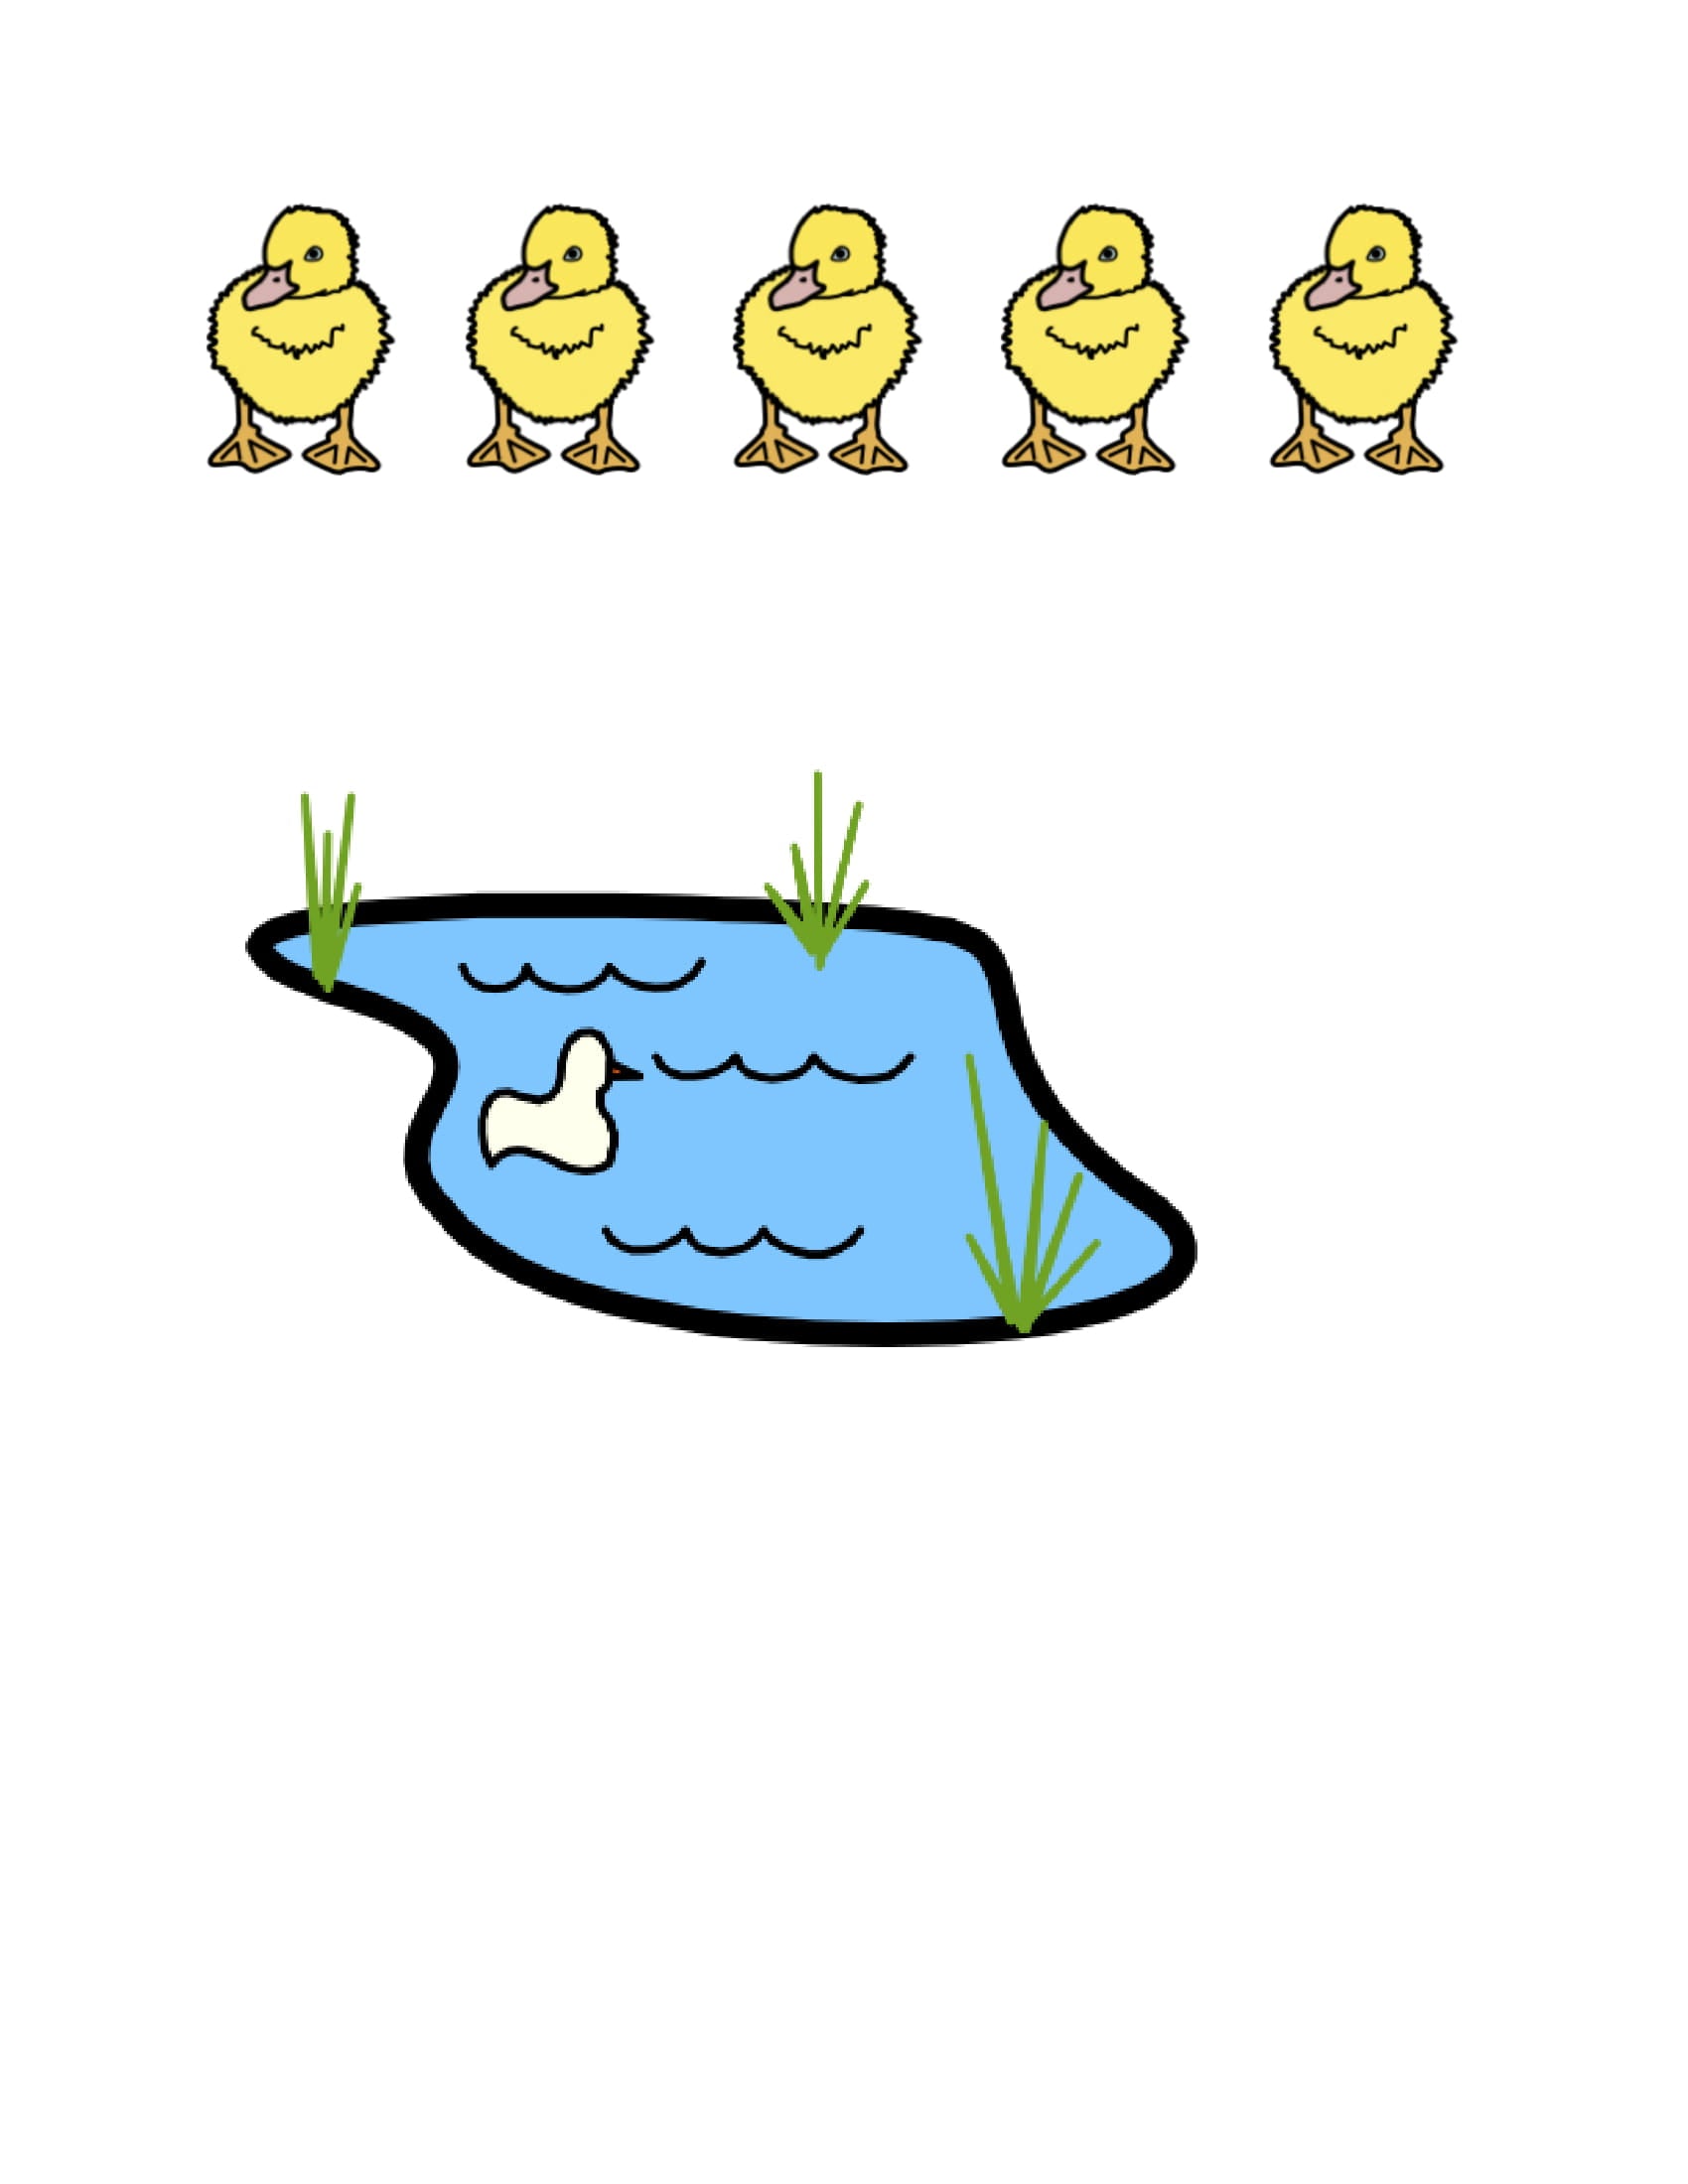 5 Little Ducks Cut Outs (Downloadable)